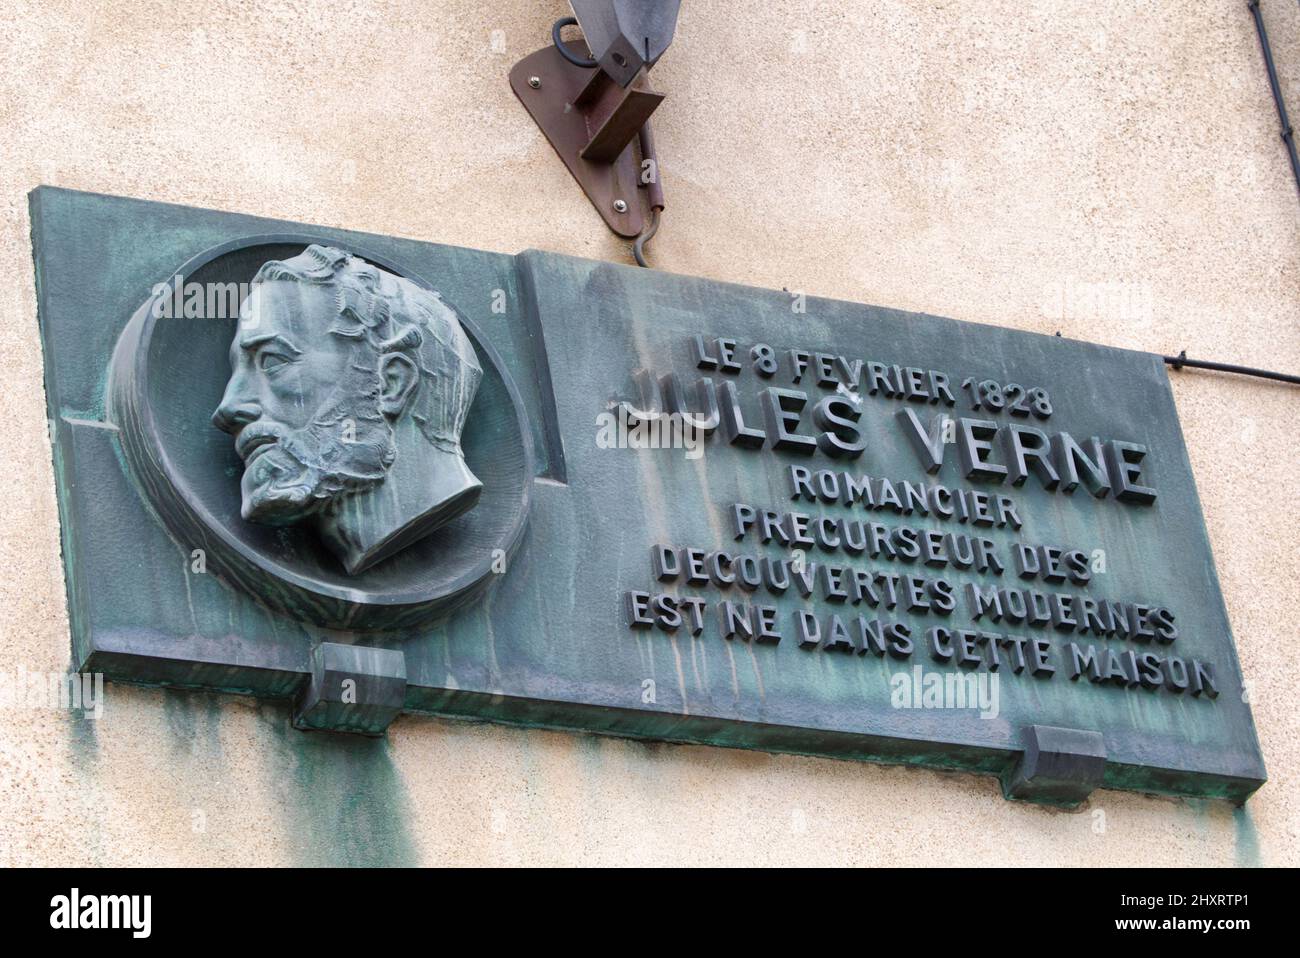 Berceau de l'imagination - lieu de naissance de Jules Verne, point de départ de ses voyages extraordinaires - Nantes - pays de la Loire - France Banque D'Images